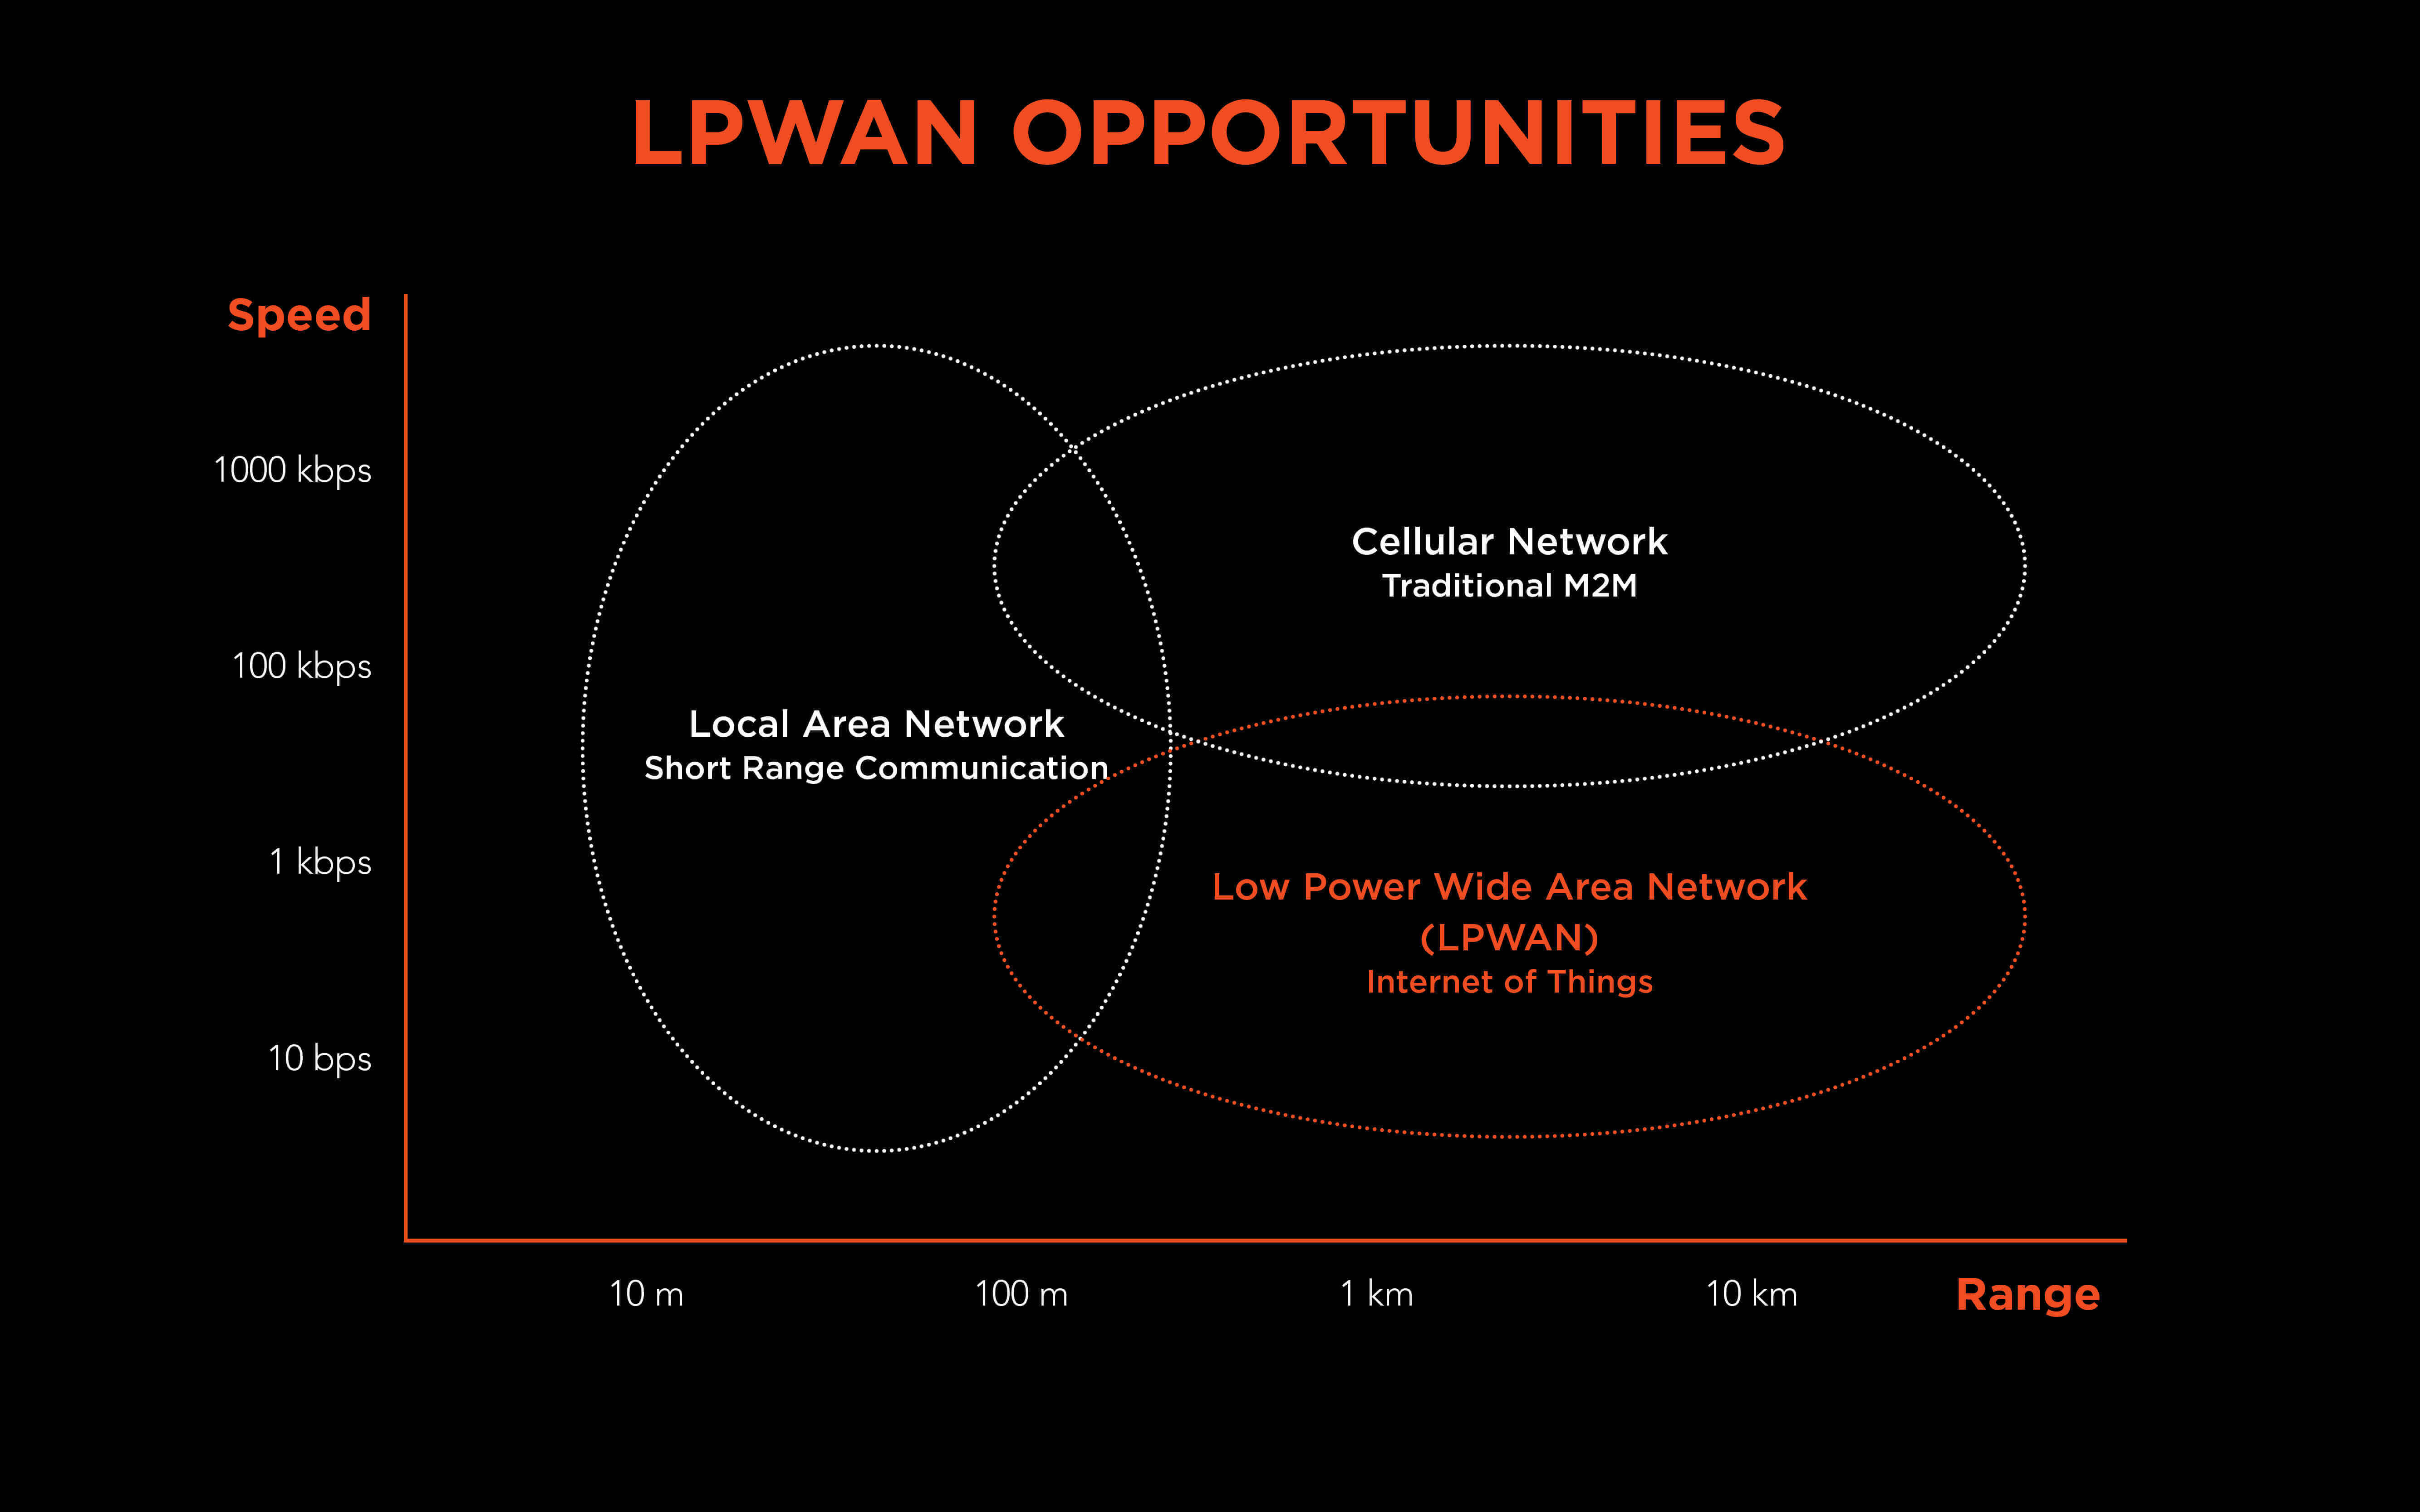 LoRa's Low Power Wide Area Network (LPWAN) za prenos in ustvarjanje uporabnih inteligentnih scenarijev iz naprav IOT - Internet of things (Internet stvari).